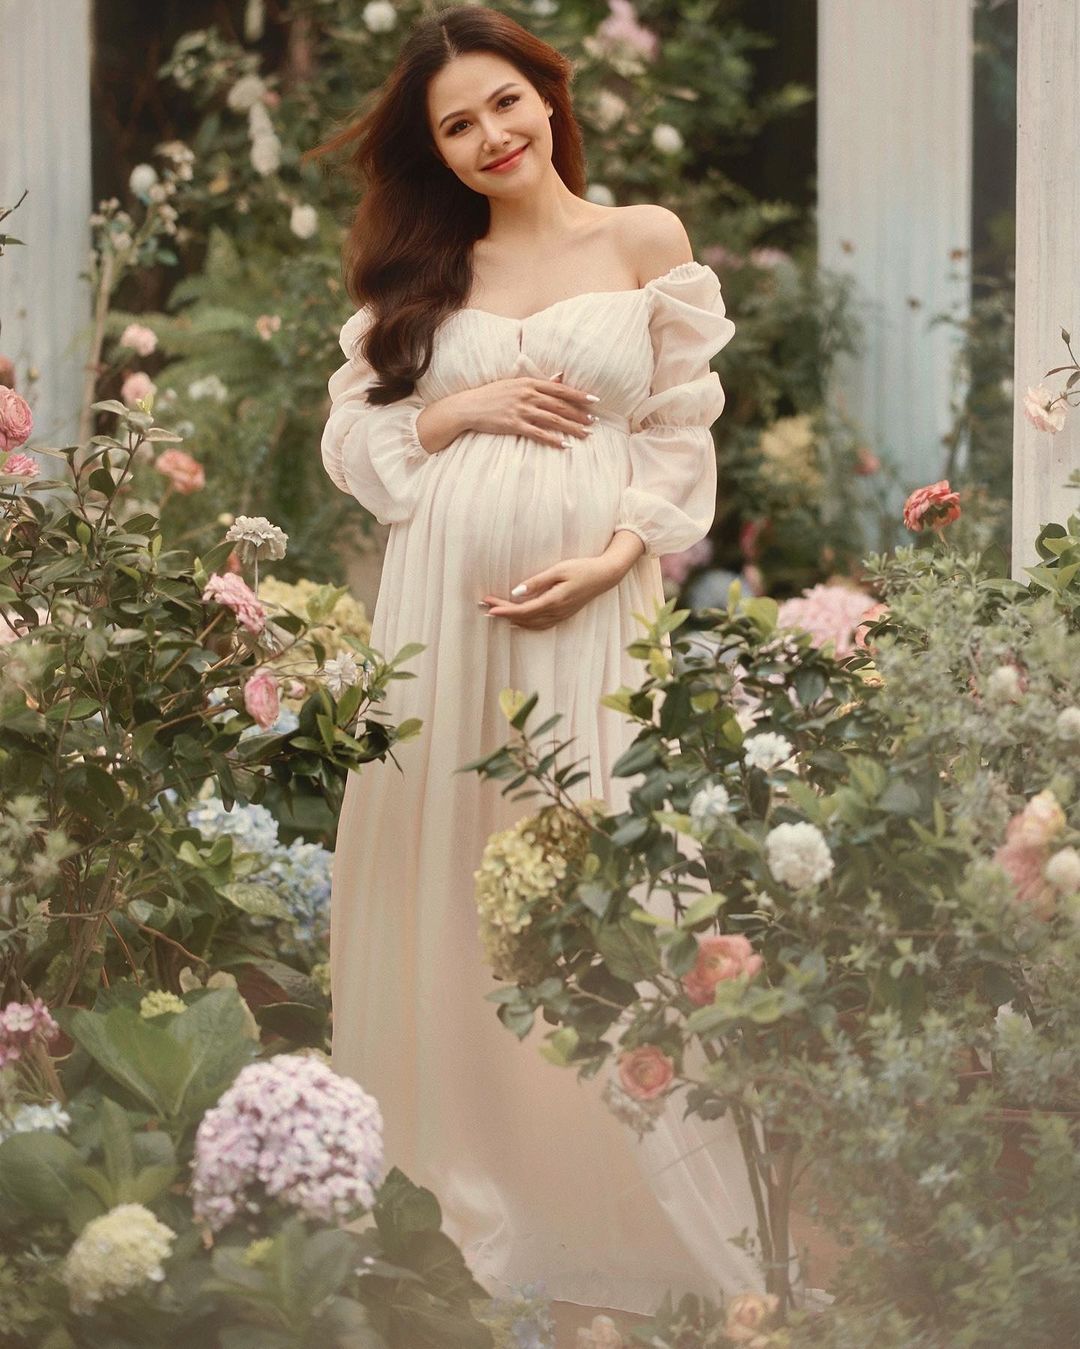 Phu nhân tập đoàn nghìn tỷ Phanh Lee xác nhận đang mang thai con gái - Ảnh 7